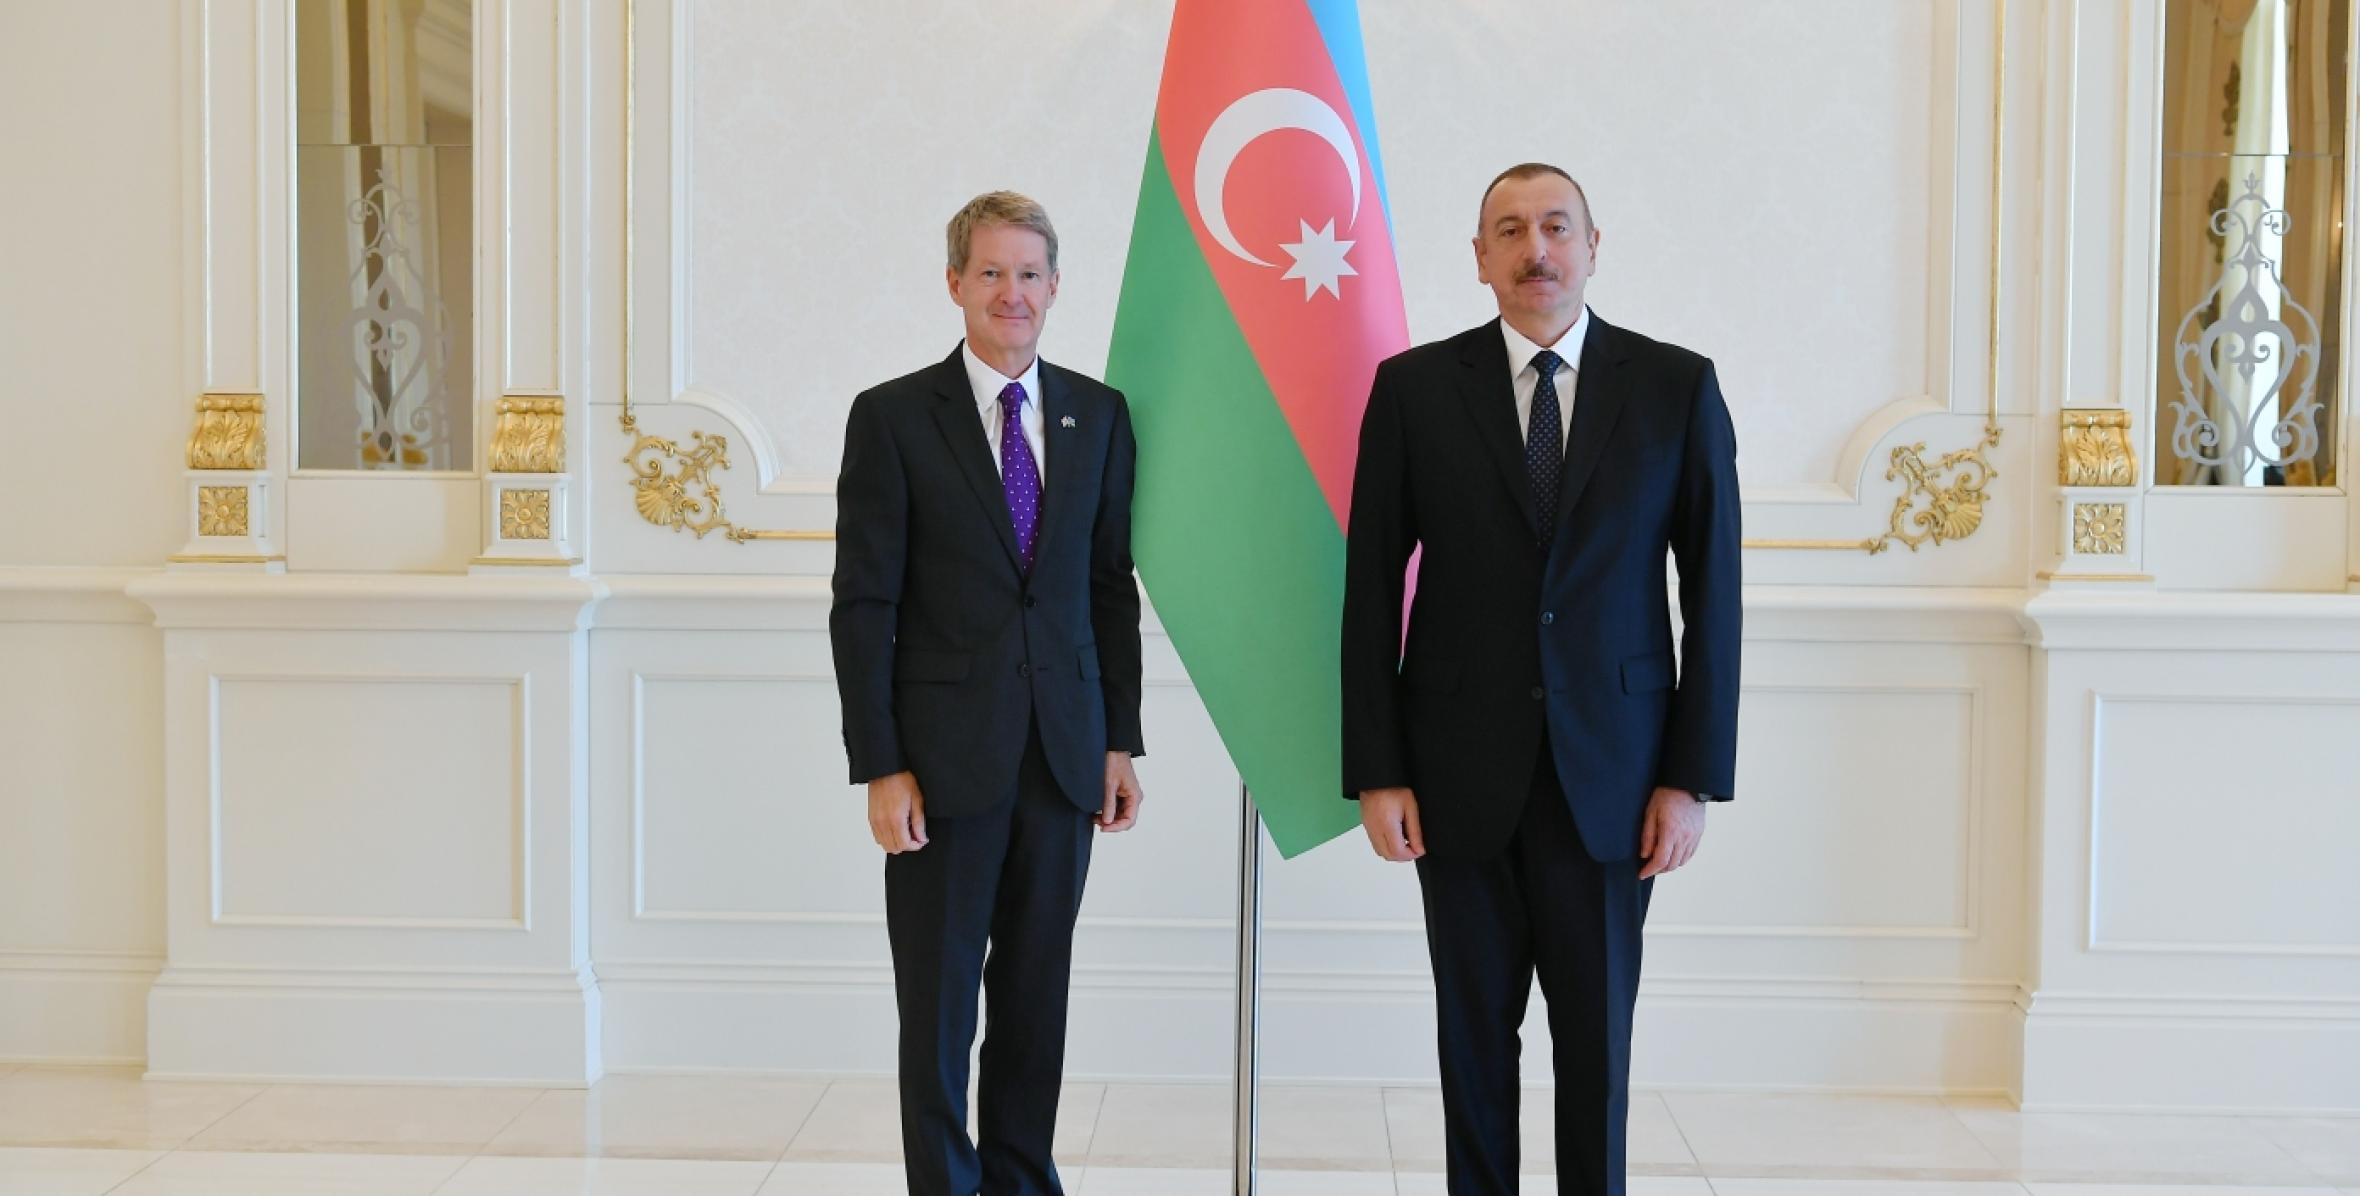 Ильхам Алиев принял верительные грамоты новоназначенного посла Великобритании в Азербайджане